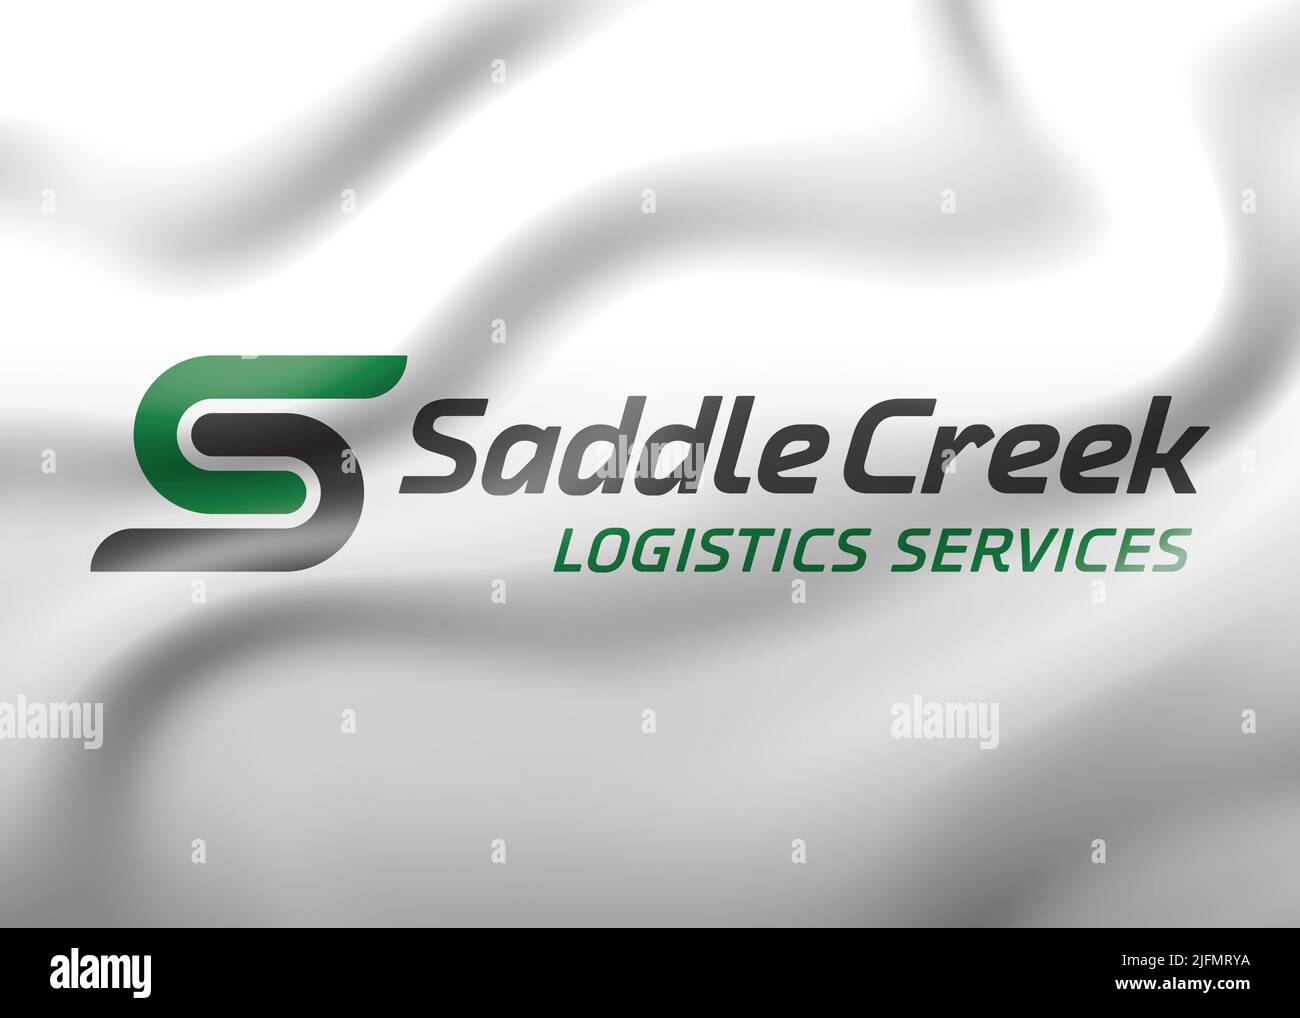 Saddle Creek Logo Stock Photo Alamy